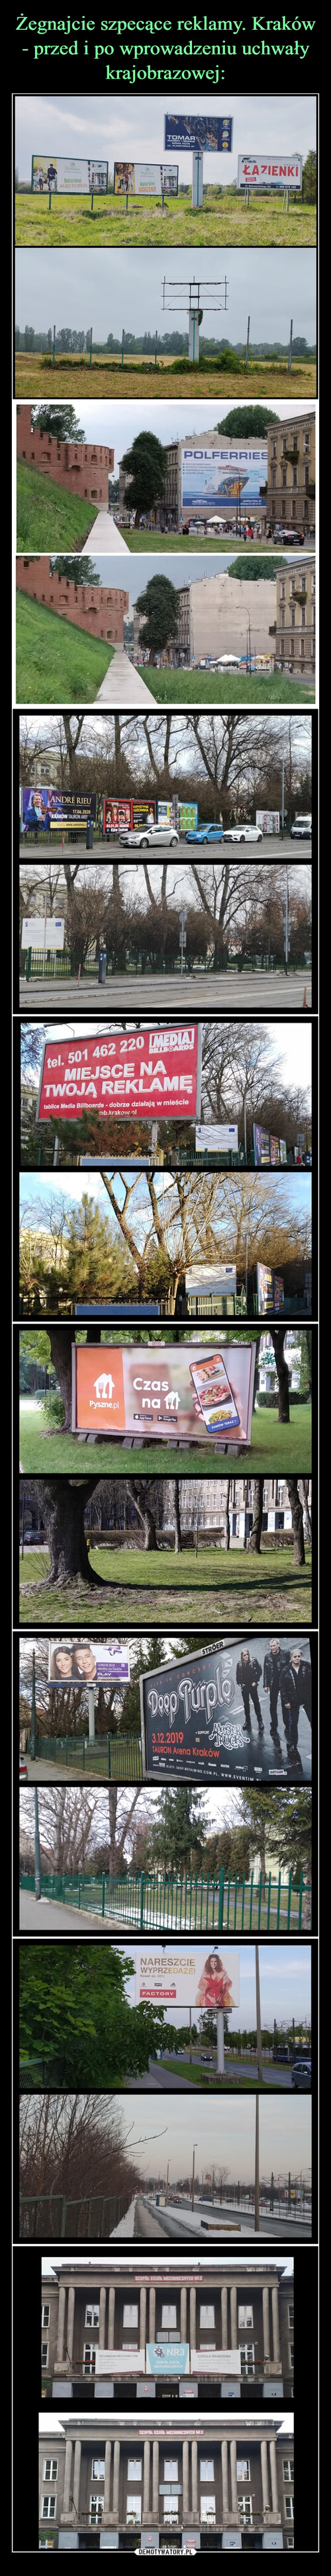 Żegnajcie szpecące reklamy. Kraków - przed i po wprowadzeniu uchwały krajobrazowej: